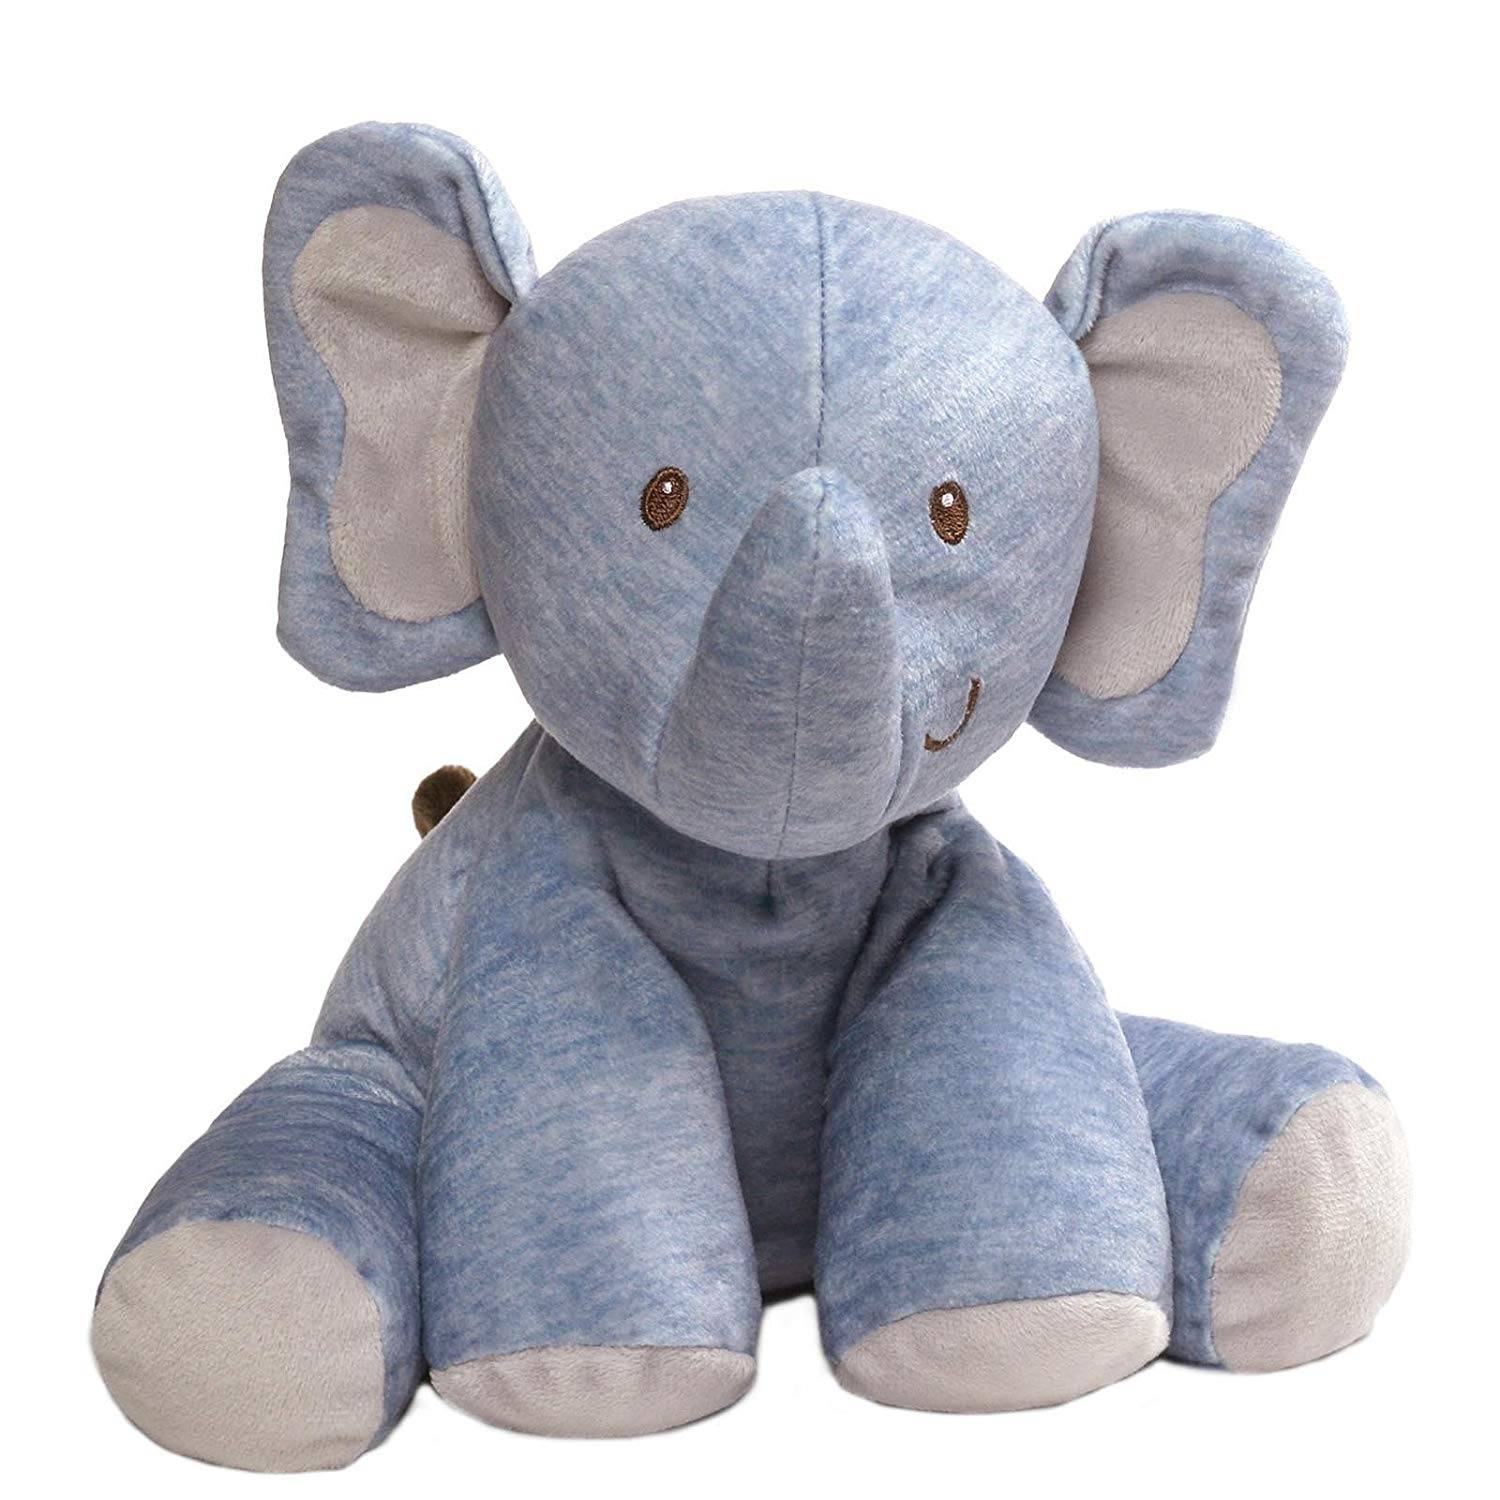 bajo precio rosa gris color azul de peluche juguetes de peluche de elefante baratas juguete de peluche para los niños